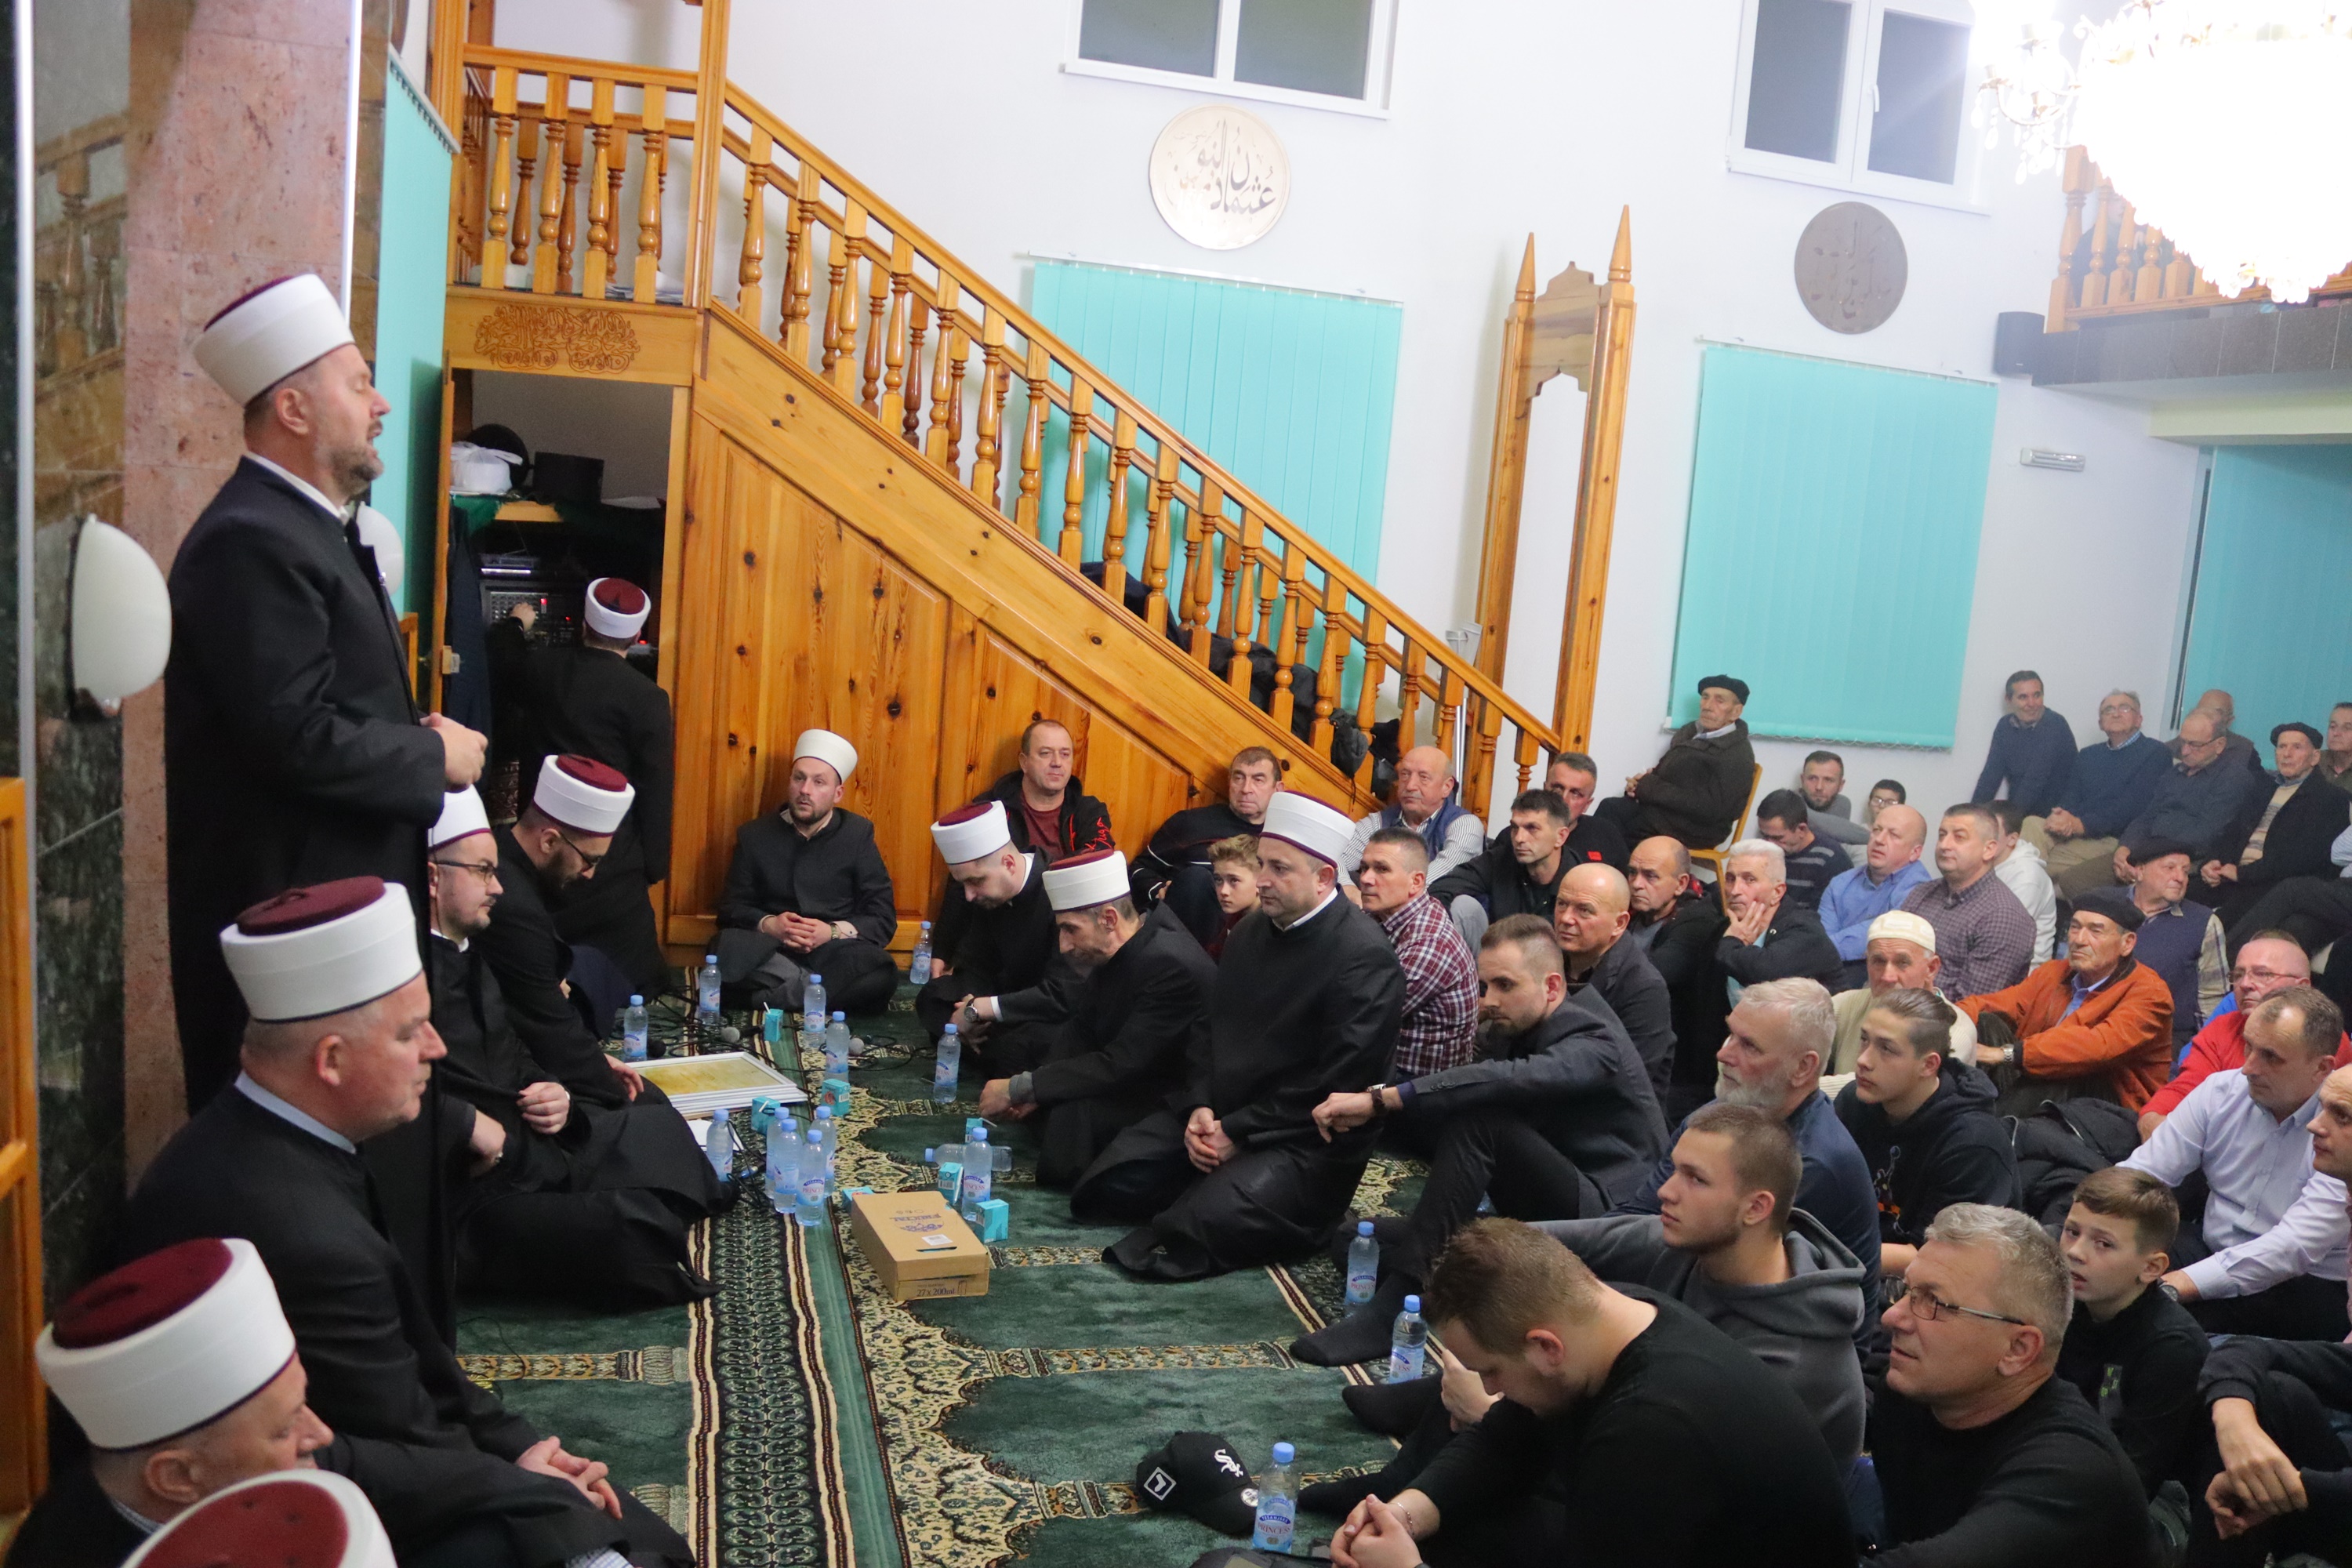 Muftija zenički na mevludskoj svečanosti u džematu Šije Donje Polje, Medžlis IZ Tešanj